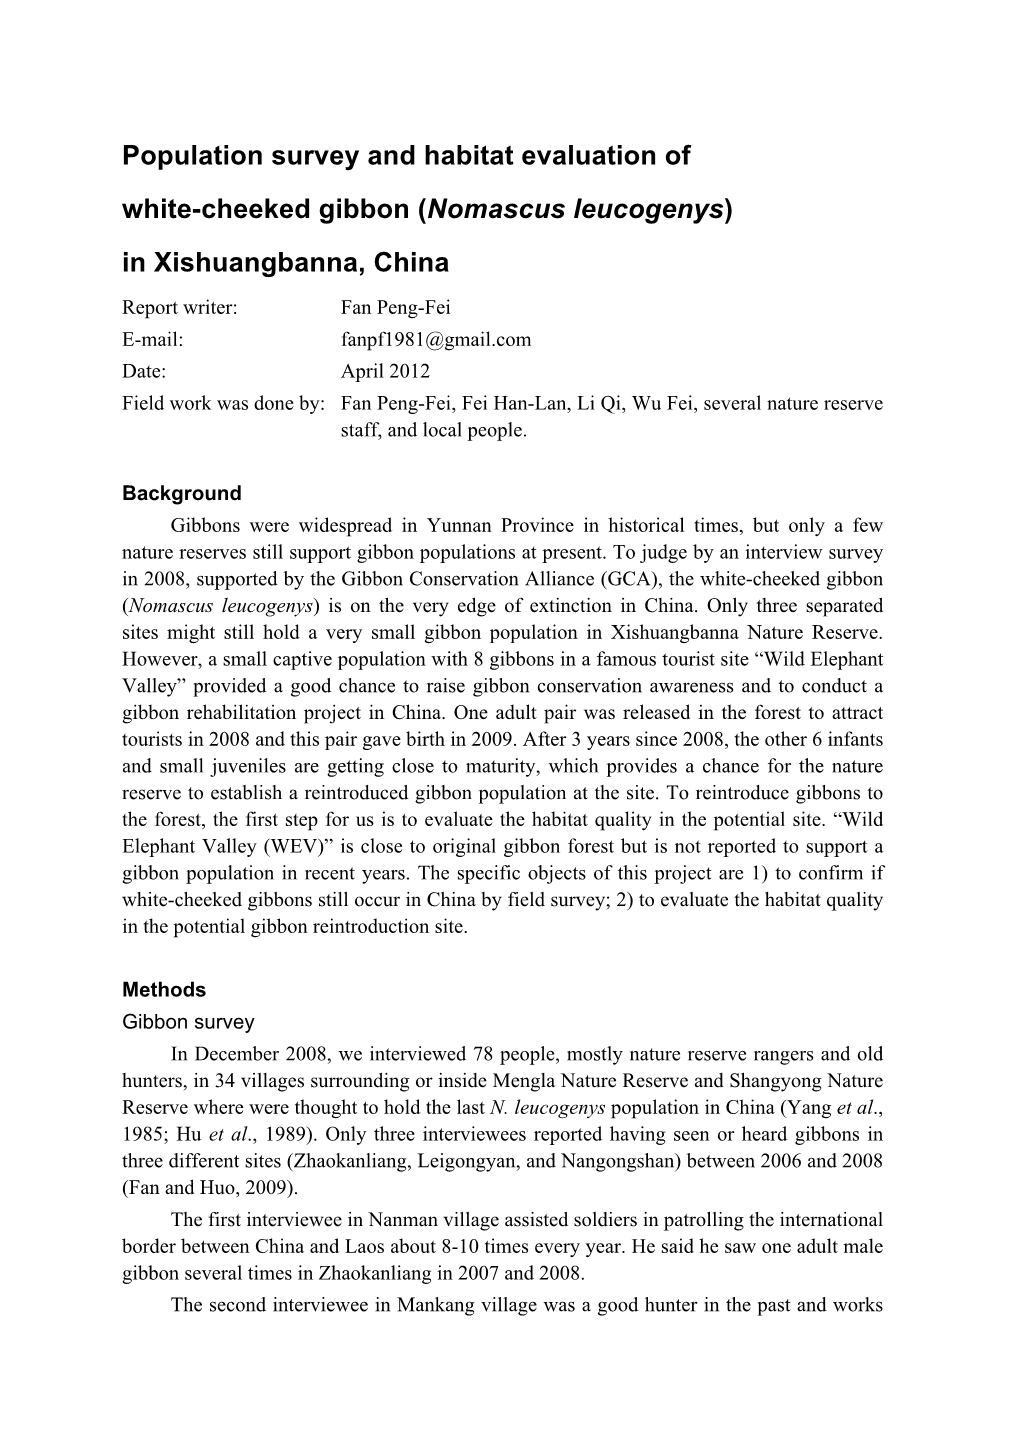 Population Survey and Habitat Evaluation of White-Cheeked Gibbon (Nomascus Leucogenys) in Xishuangbanna, China